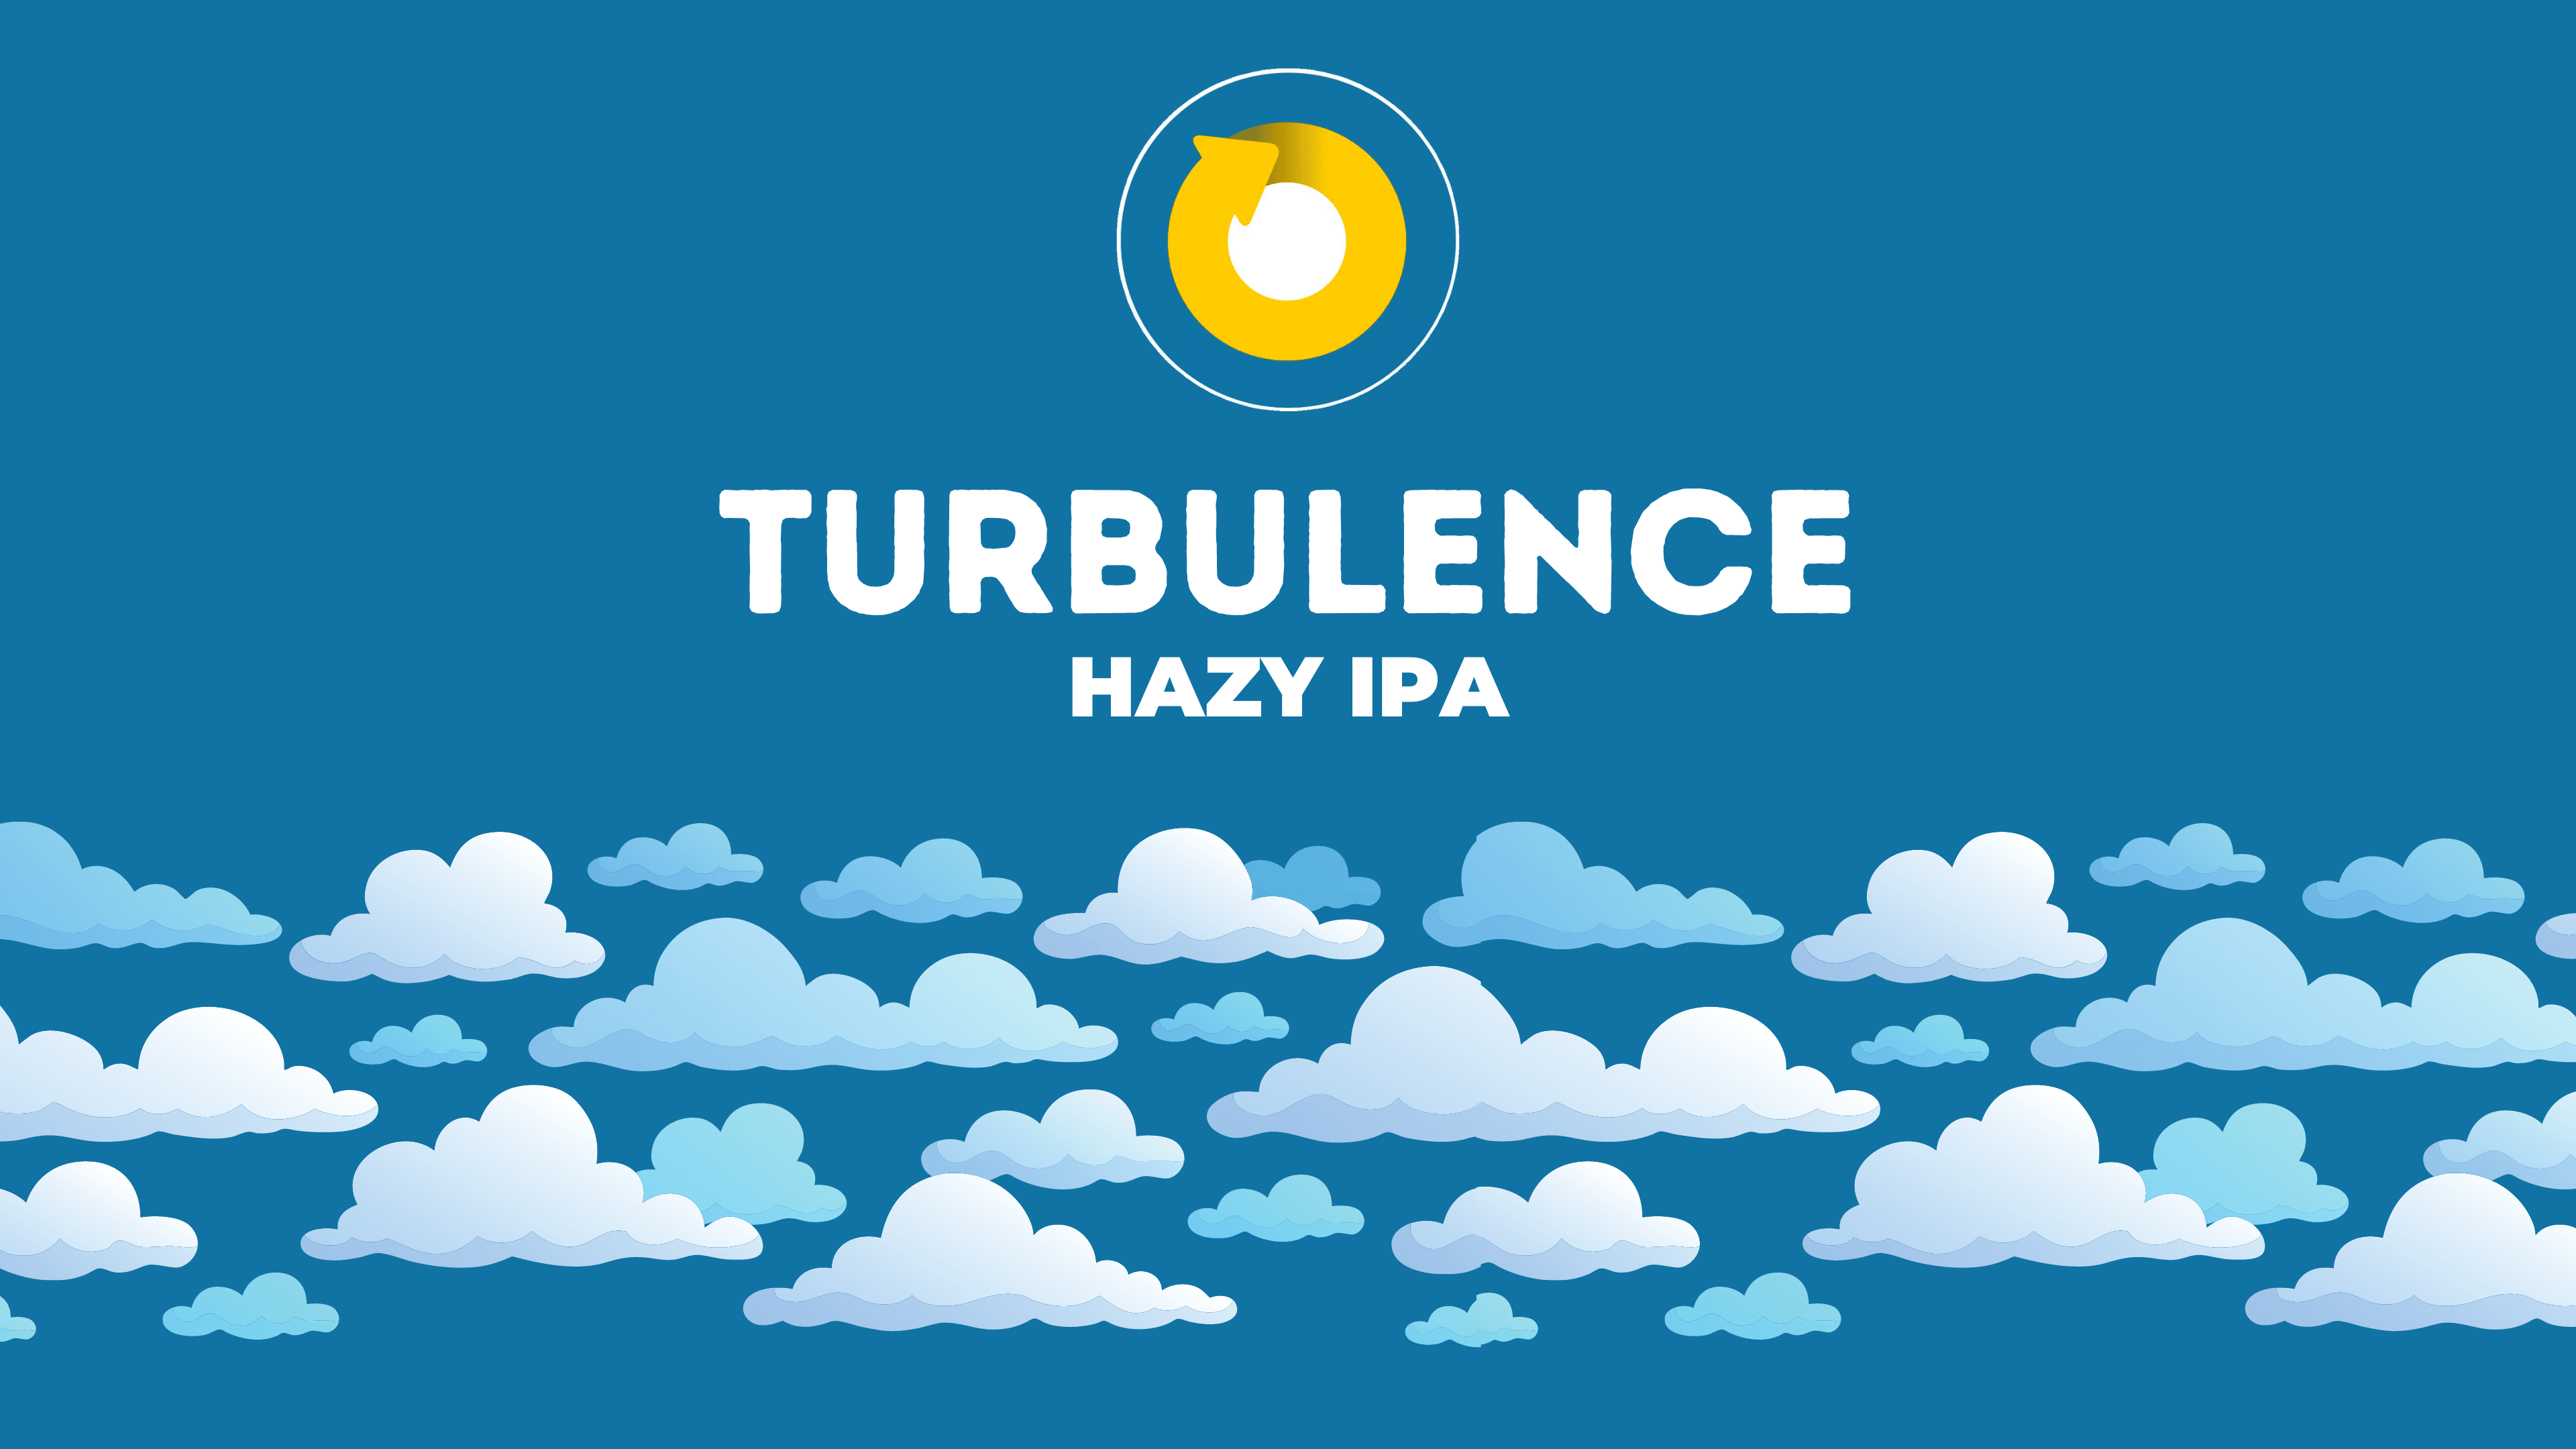 Turbulence Hazy IPA Returns